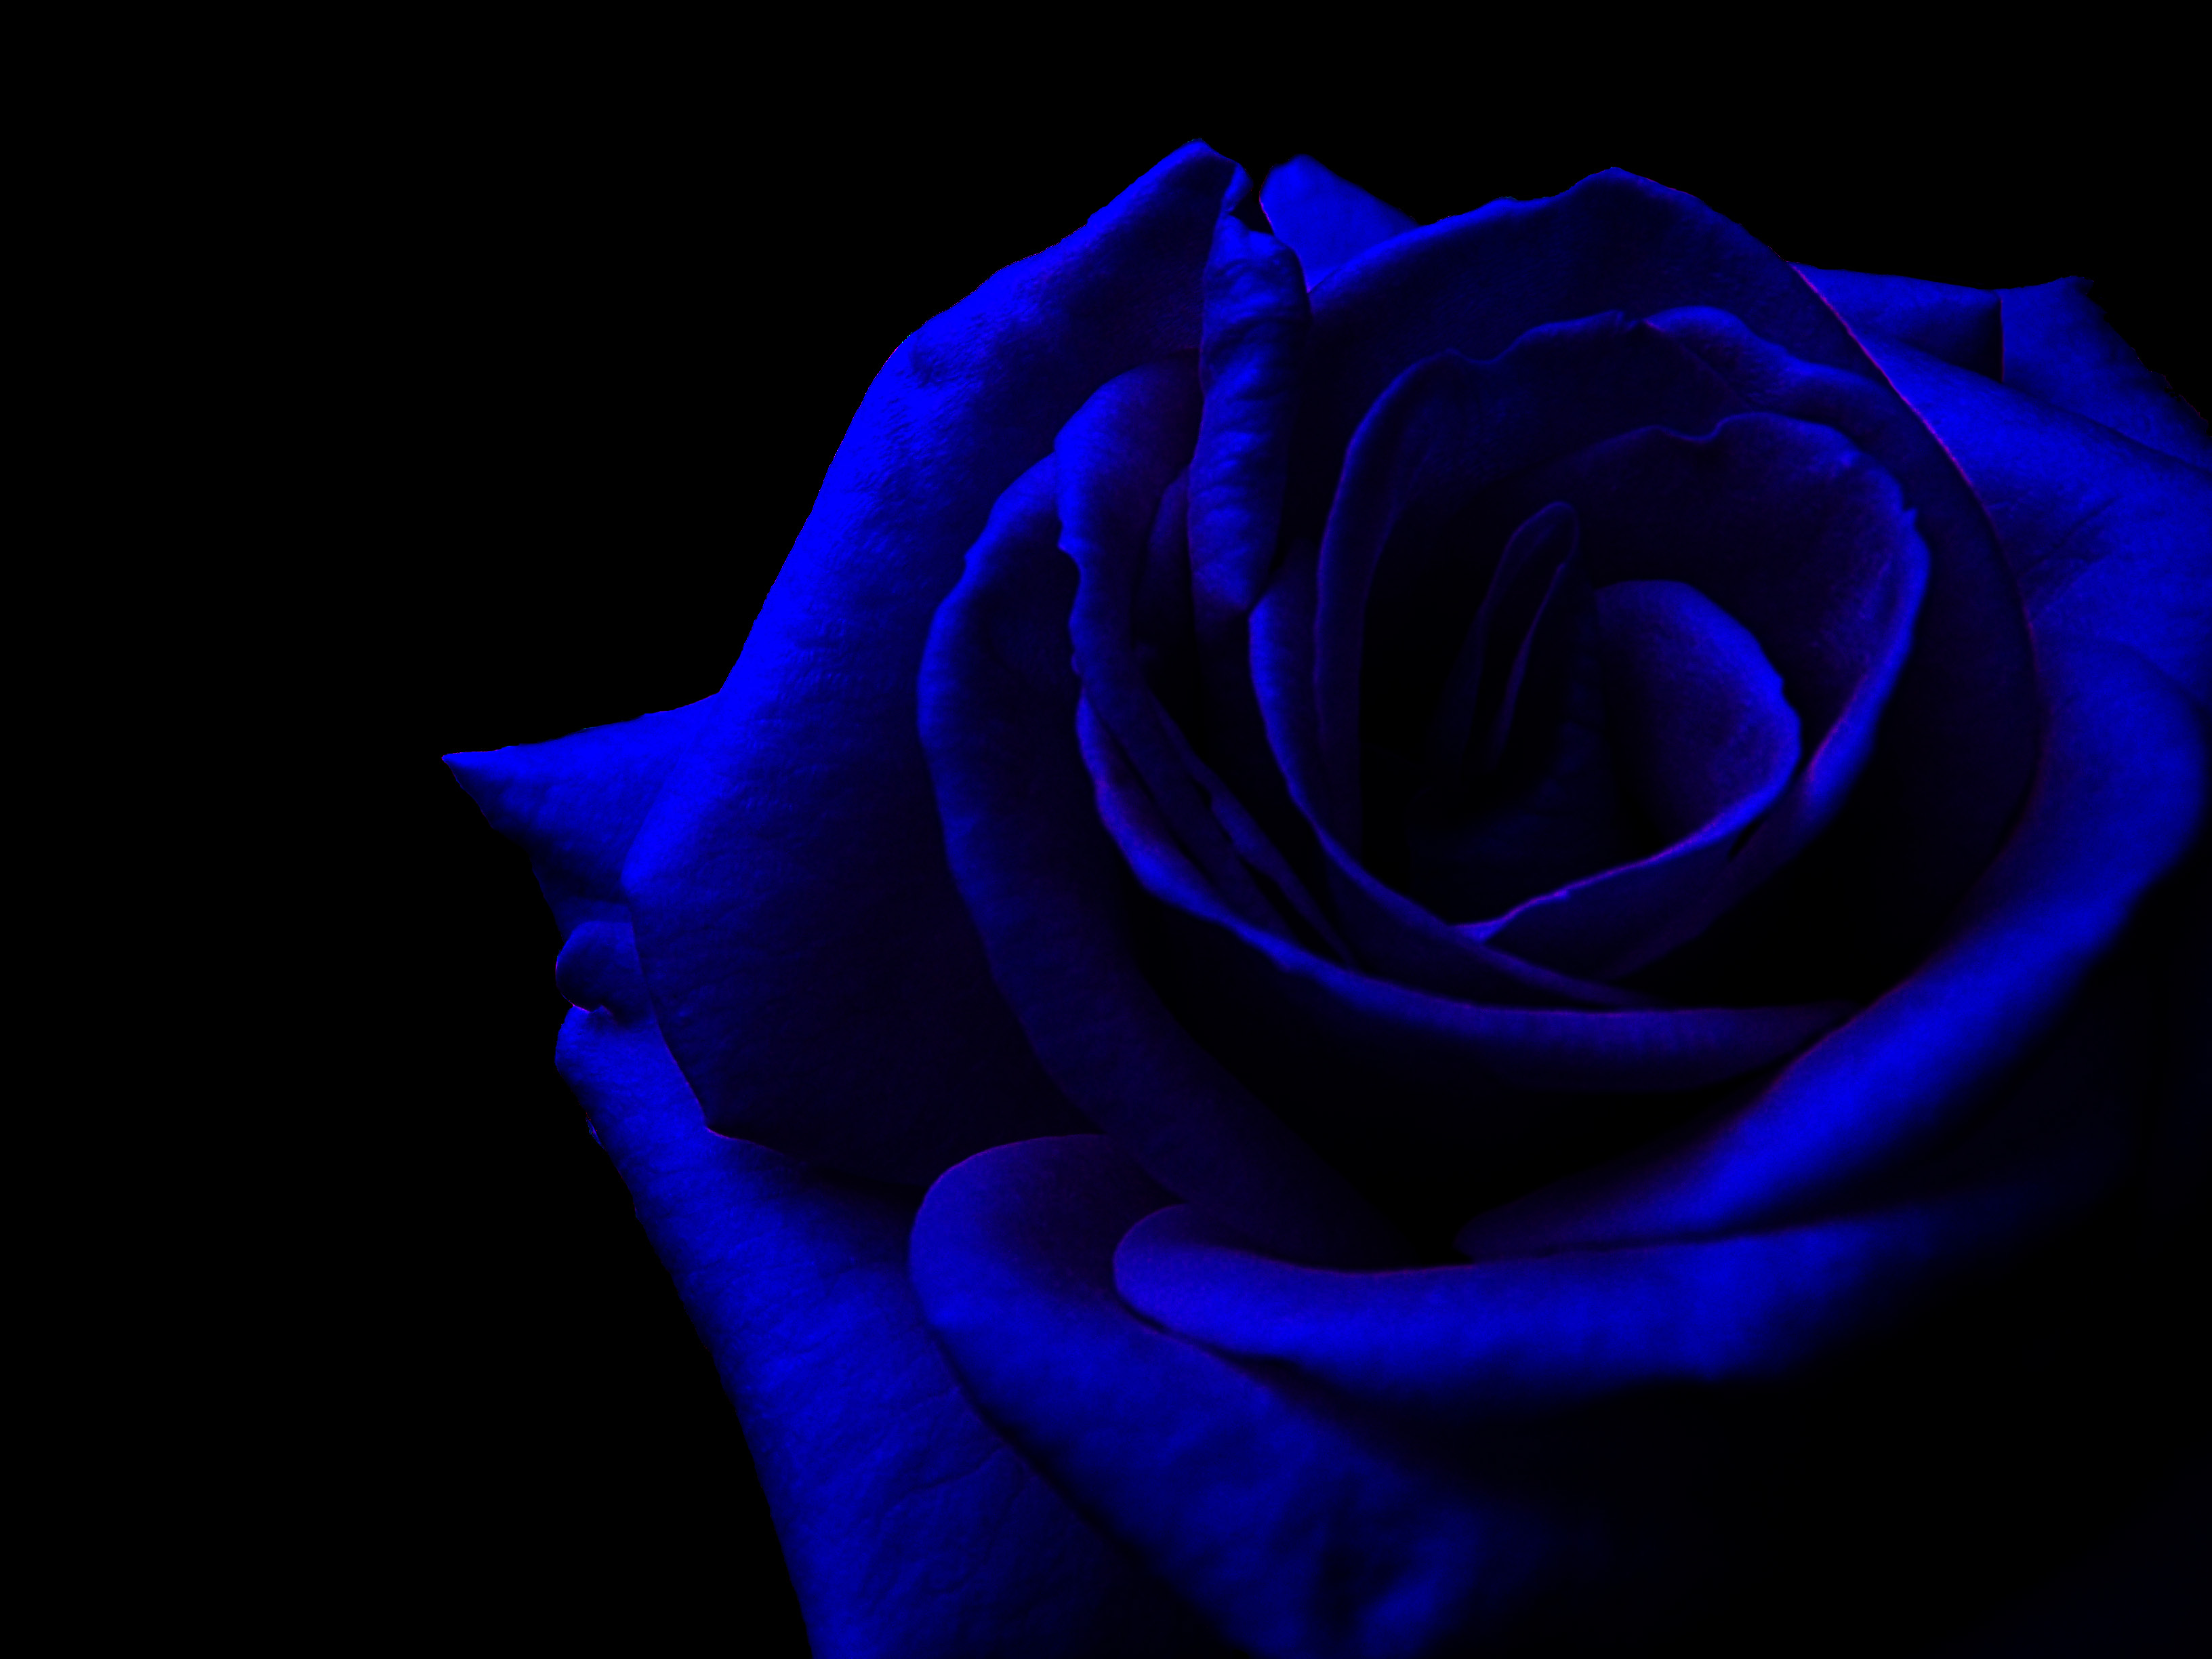 Dark Blue Roses Wallpaper - WallpaperSafari